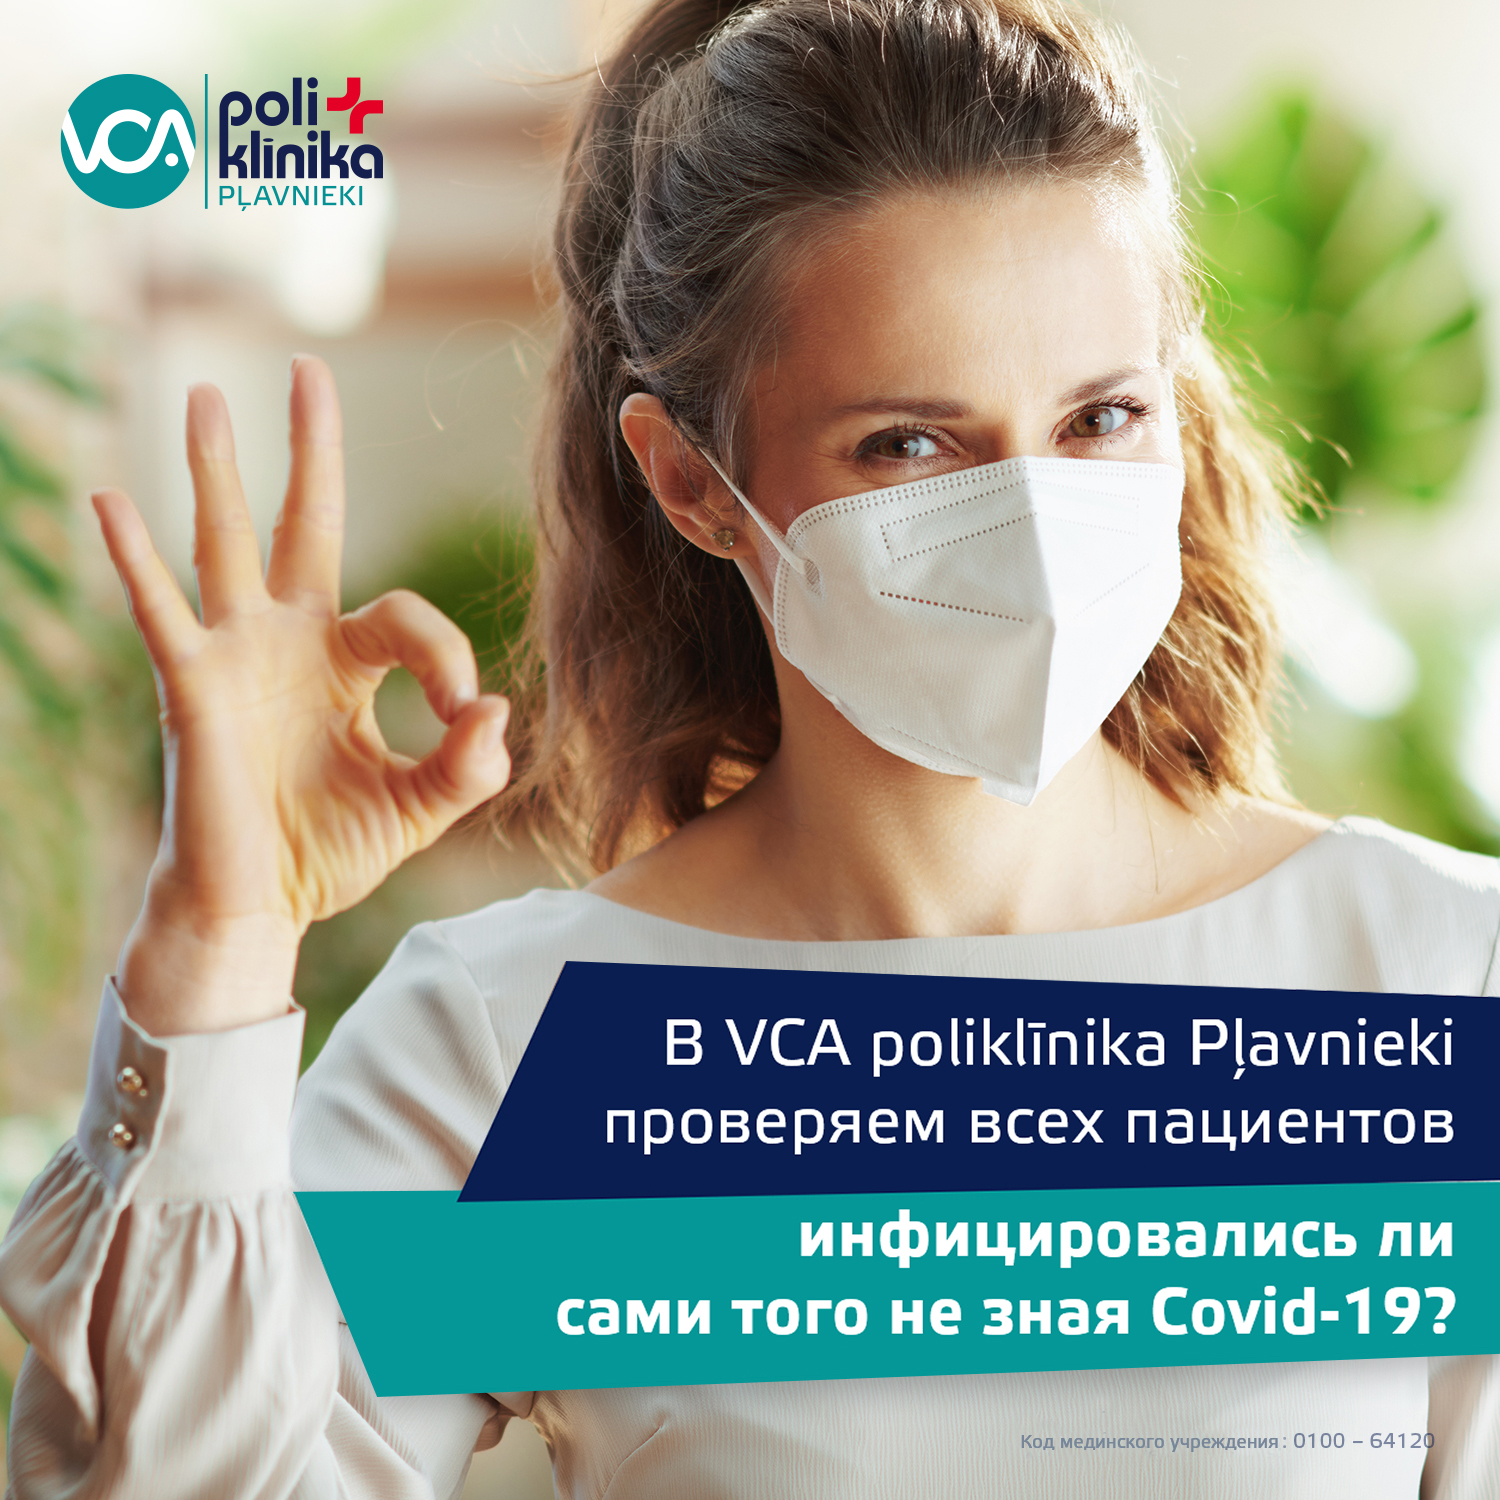 VCA poliklīnika Pulss - Acu spiediena kontrole mājas apstākļos